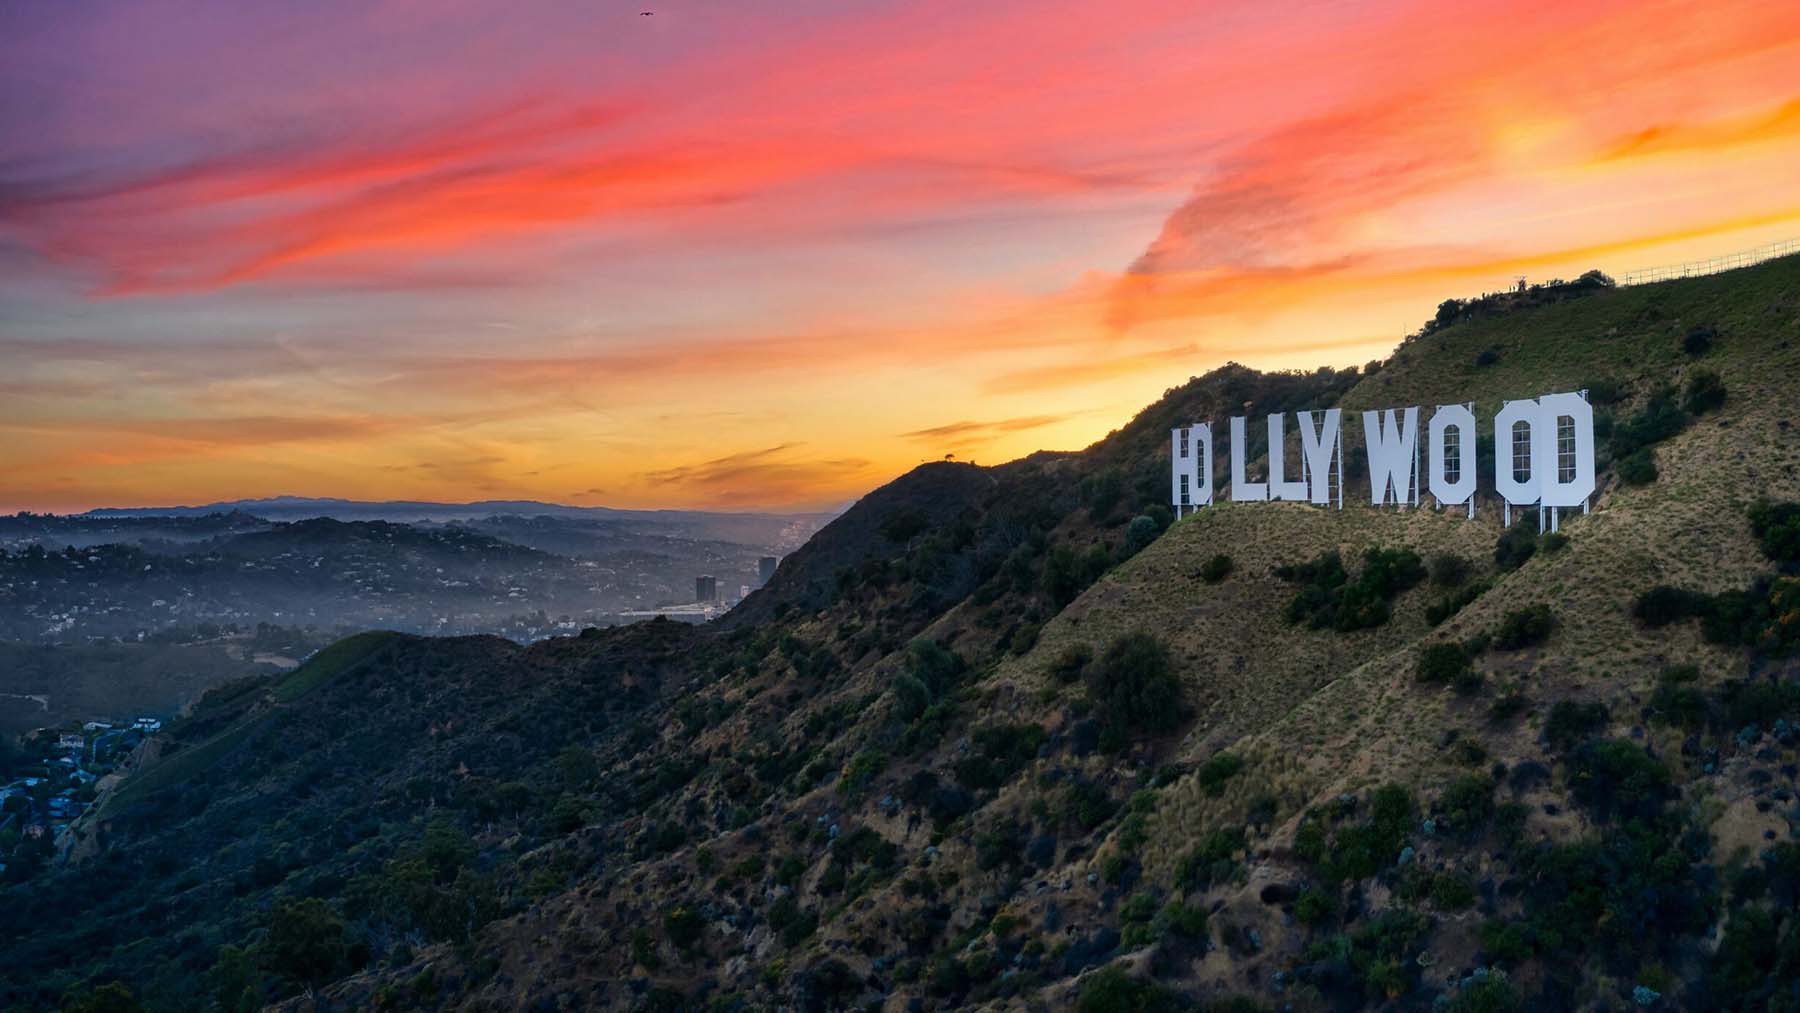 La vista de Hollywood desde el observatorio Griffith.